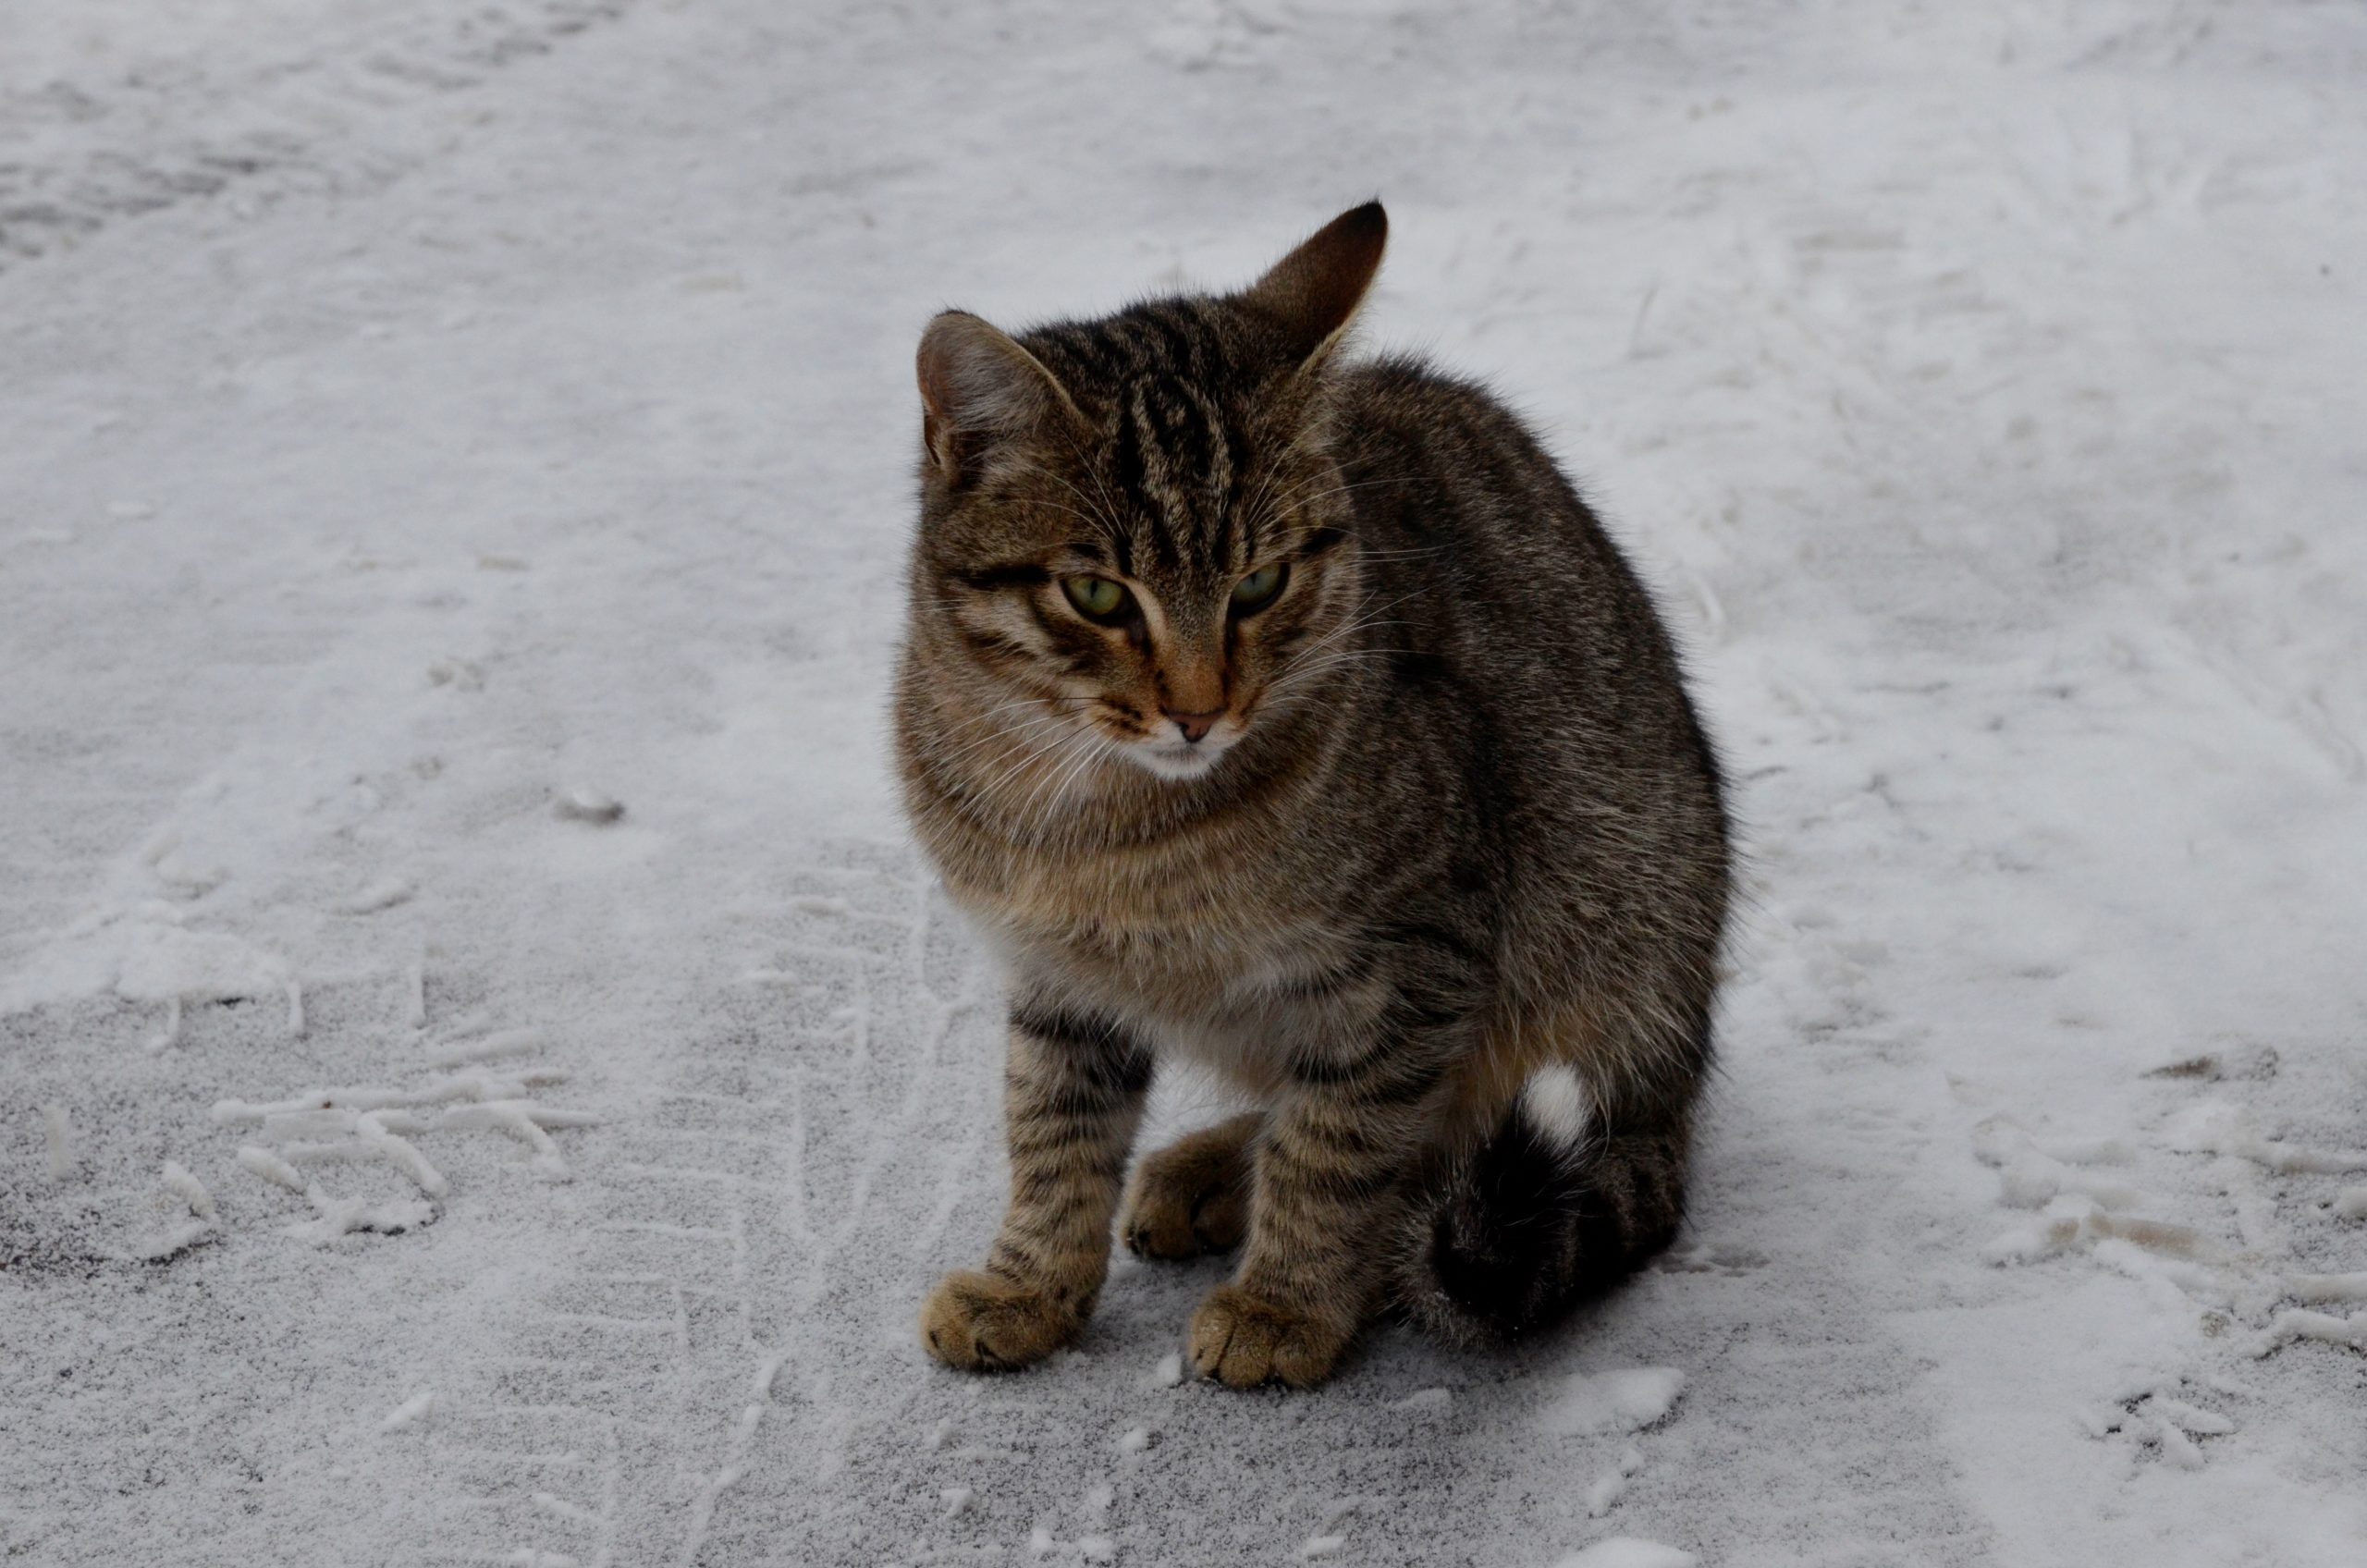 Новую вакансию специалиста по подсчету котов открыли в Москве